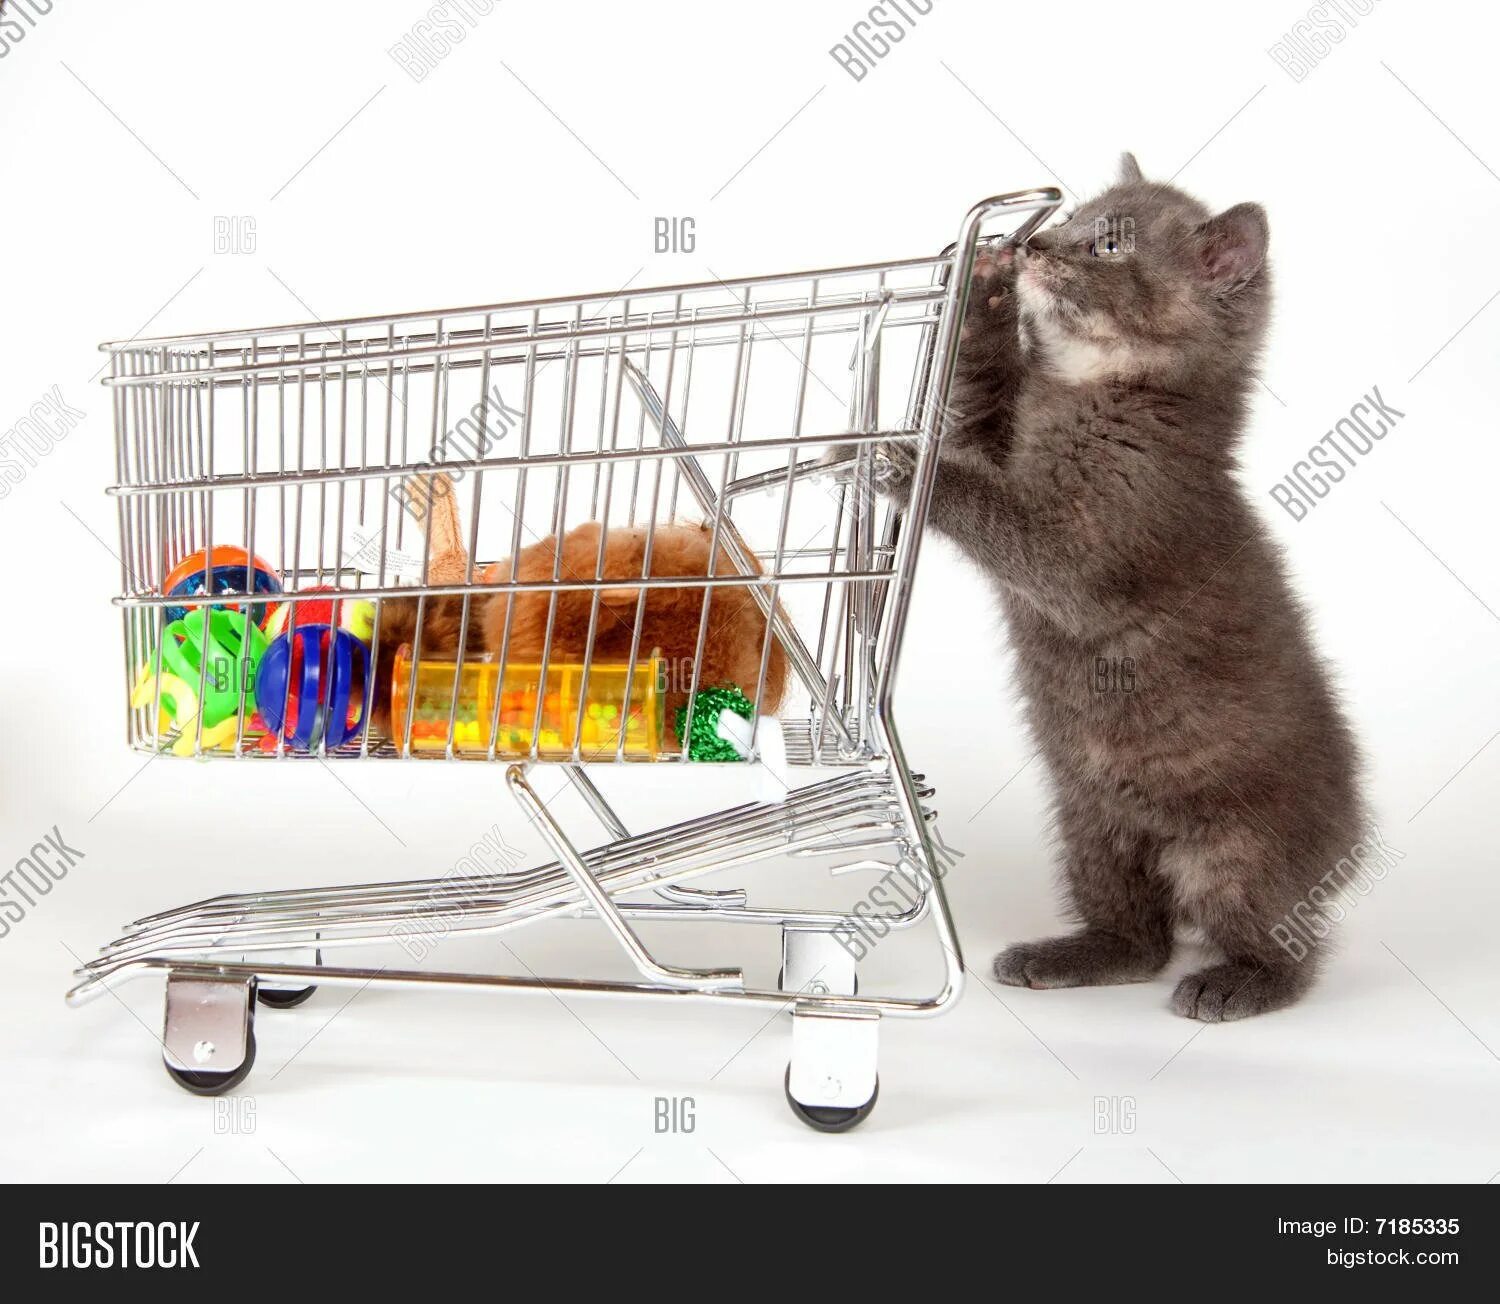 Интернет магазин для кошек нижний новгород. Товары для животных. Кот с тележкой. Зоотовары для животных. Кот в зоомагазине.